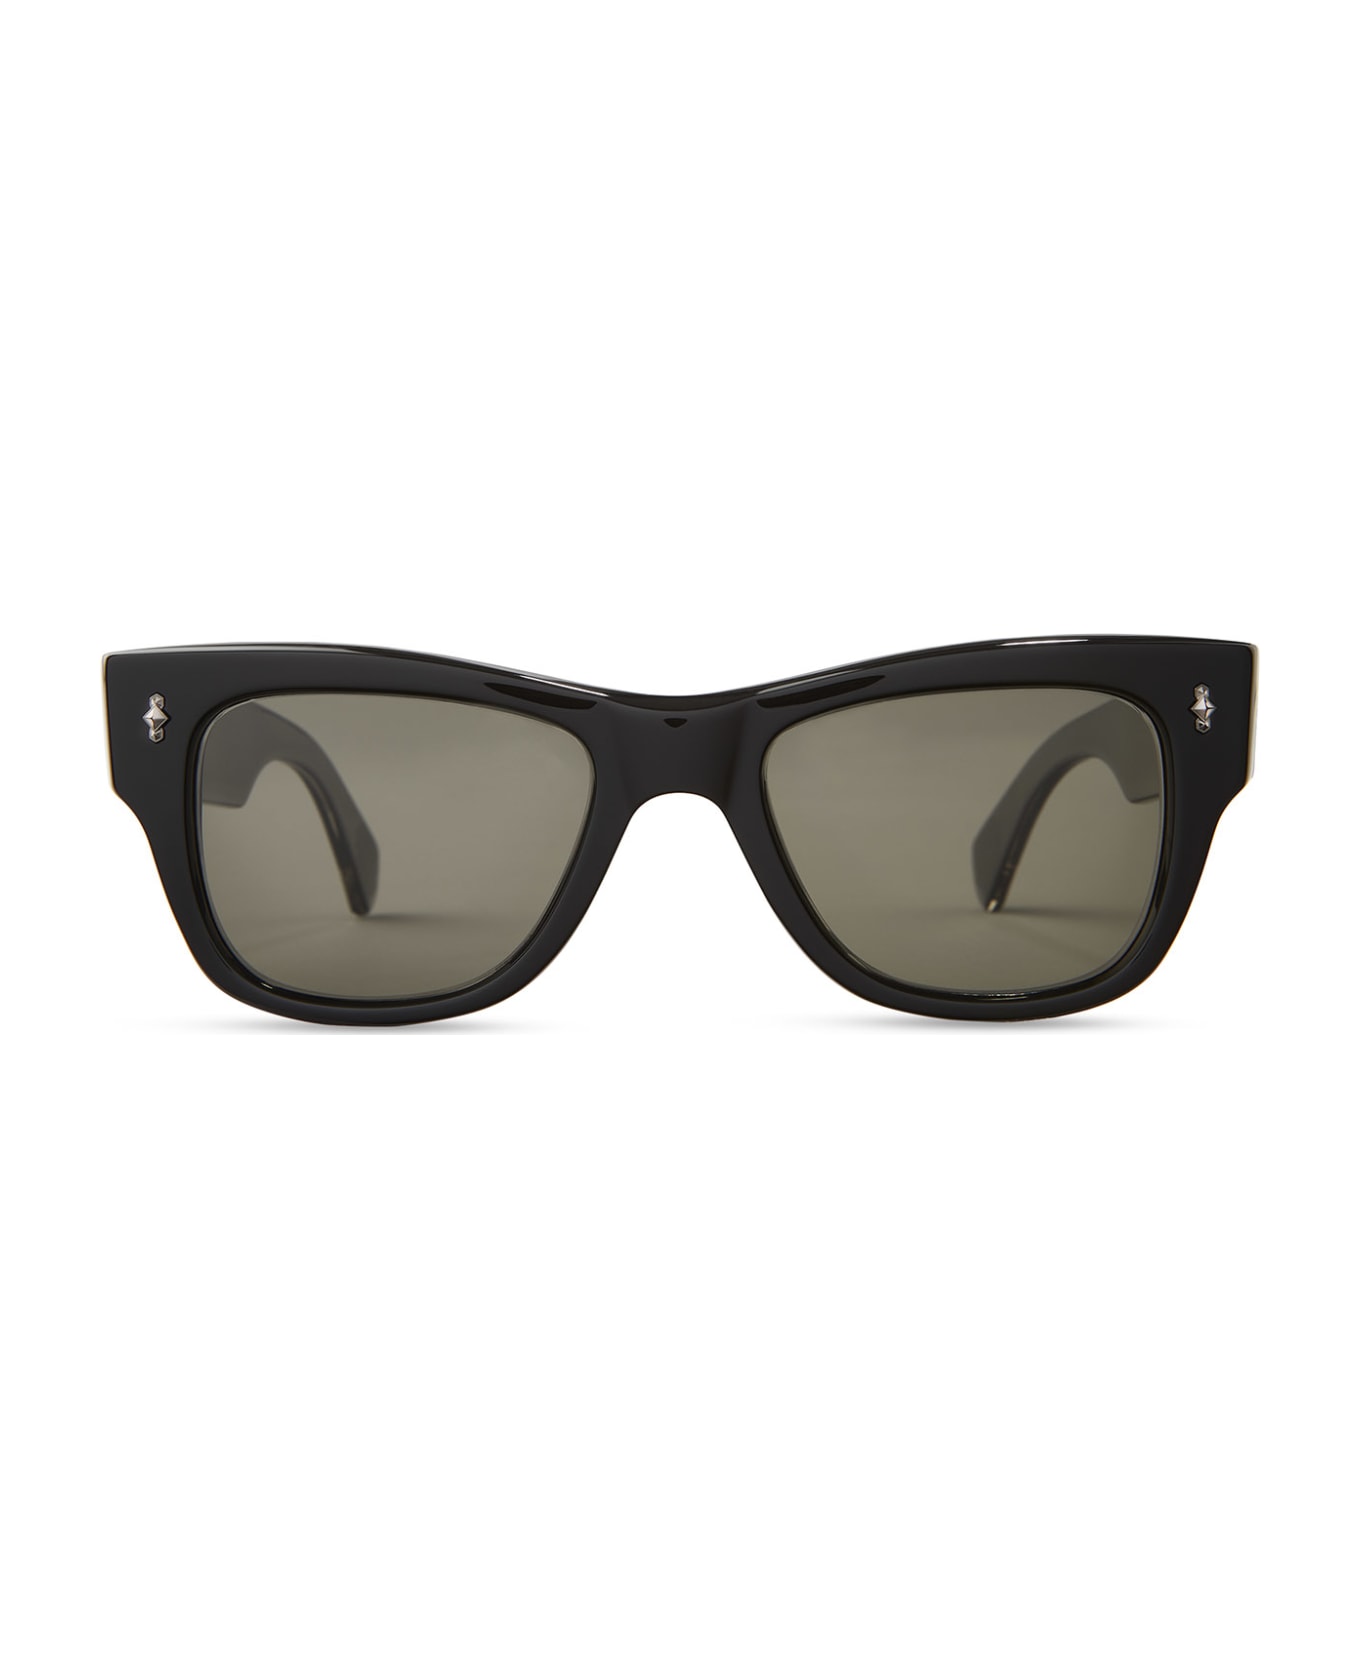 Mr. Leight Duke S Black-gunmetal Sunglasses -  Black-Gunmetal